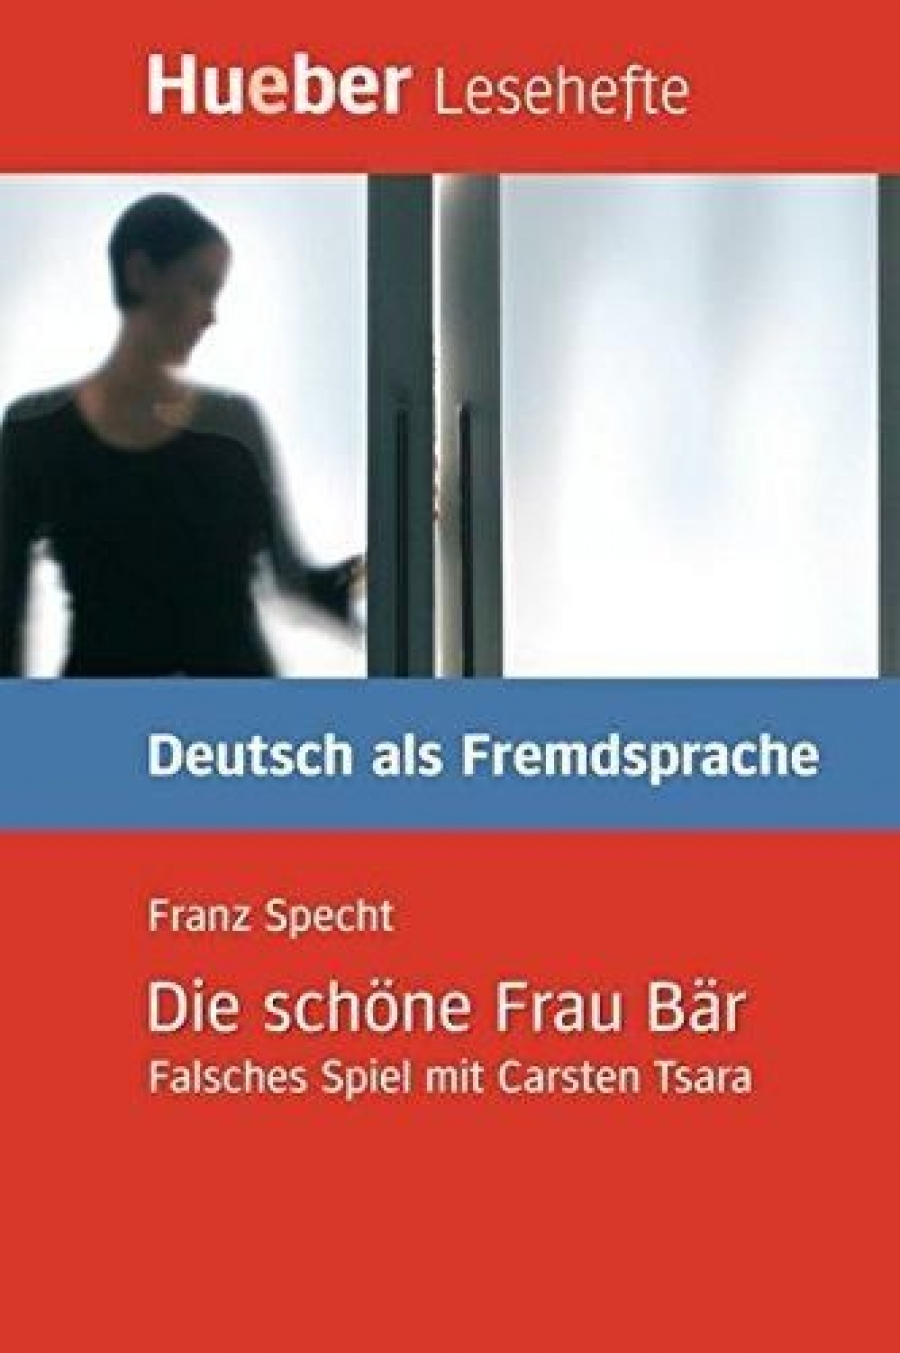 Franz Specht Die schone Frau Bar - Falsches Spiel mit Carsten Tsara - Leseheft 